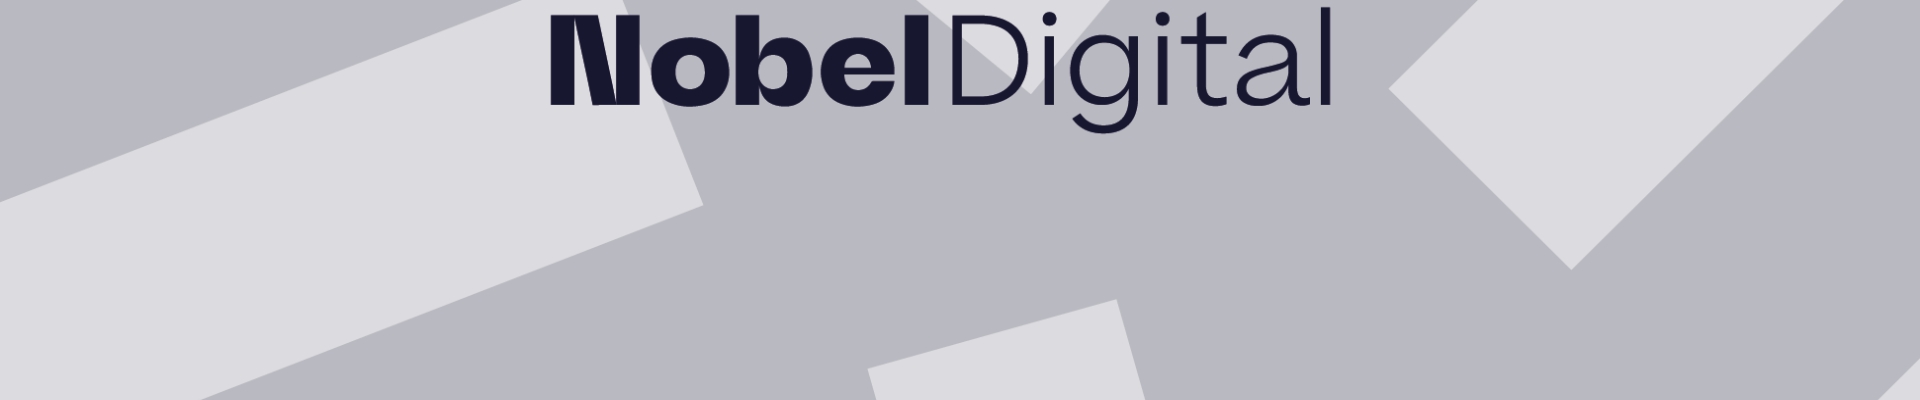 Suurim mainega ettevõte NOBEL DIGITAL OÜ, maineskoor 6210, aktiivseid äriseoseid 5. Tegutseb peamiselt valdkonnas: Reklaami vahendamine meedias.